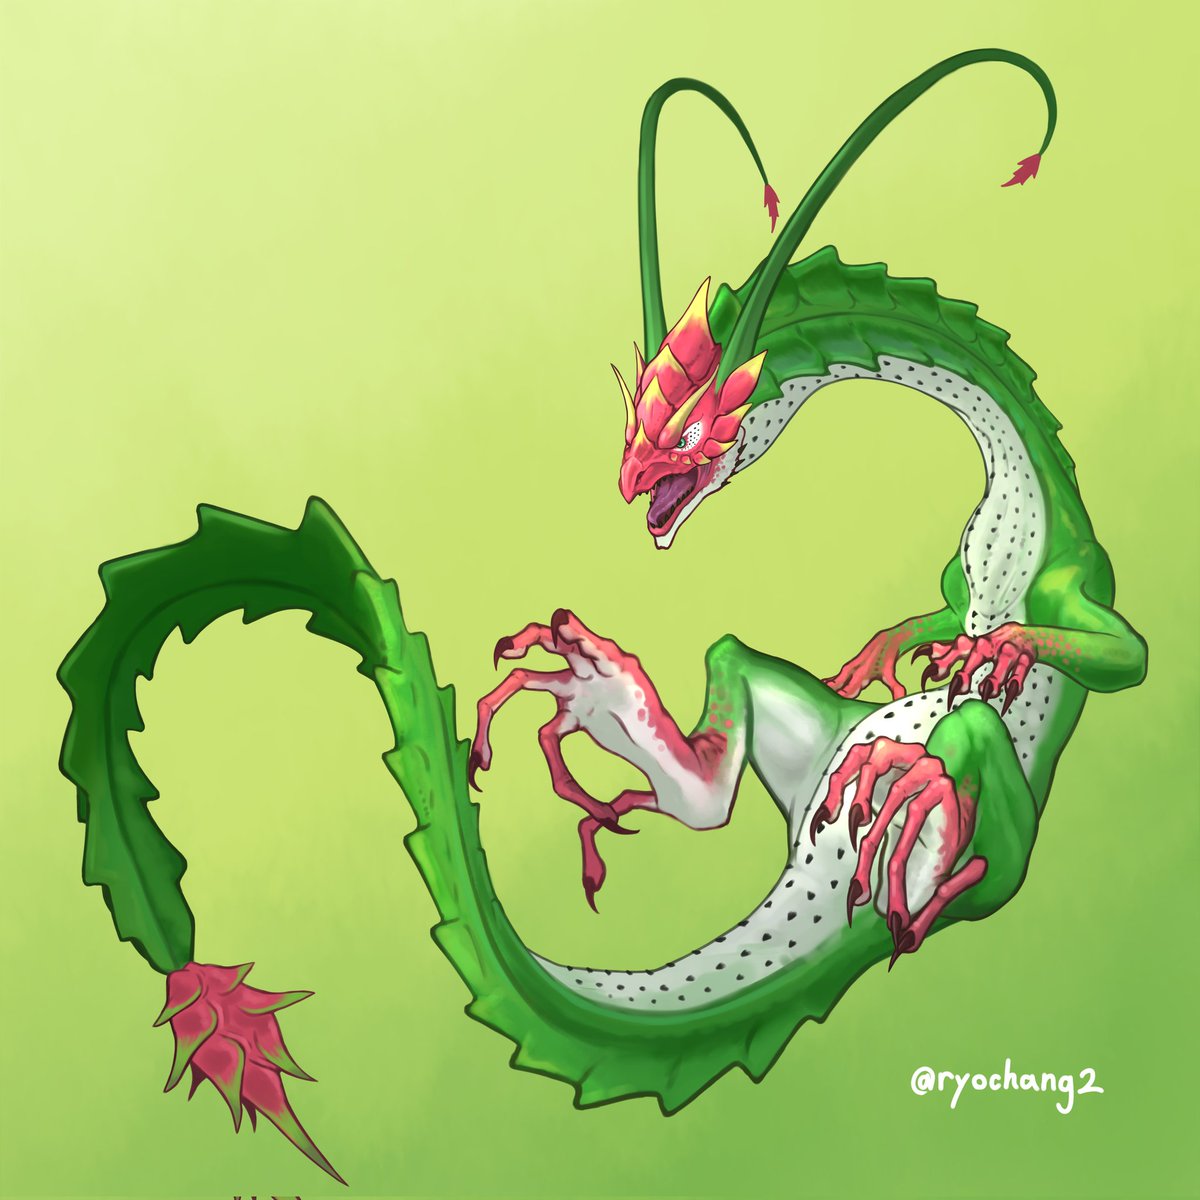 「#ドラゴンの日竜の名を持つヤツら 」|ryochang(りょーちゃん)@お仕事募集中のイラスト